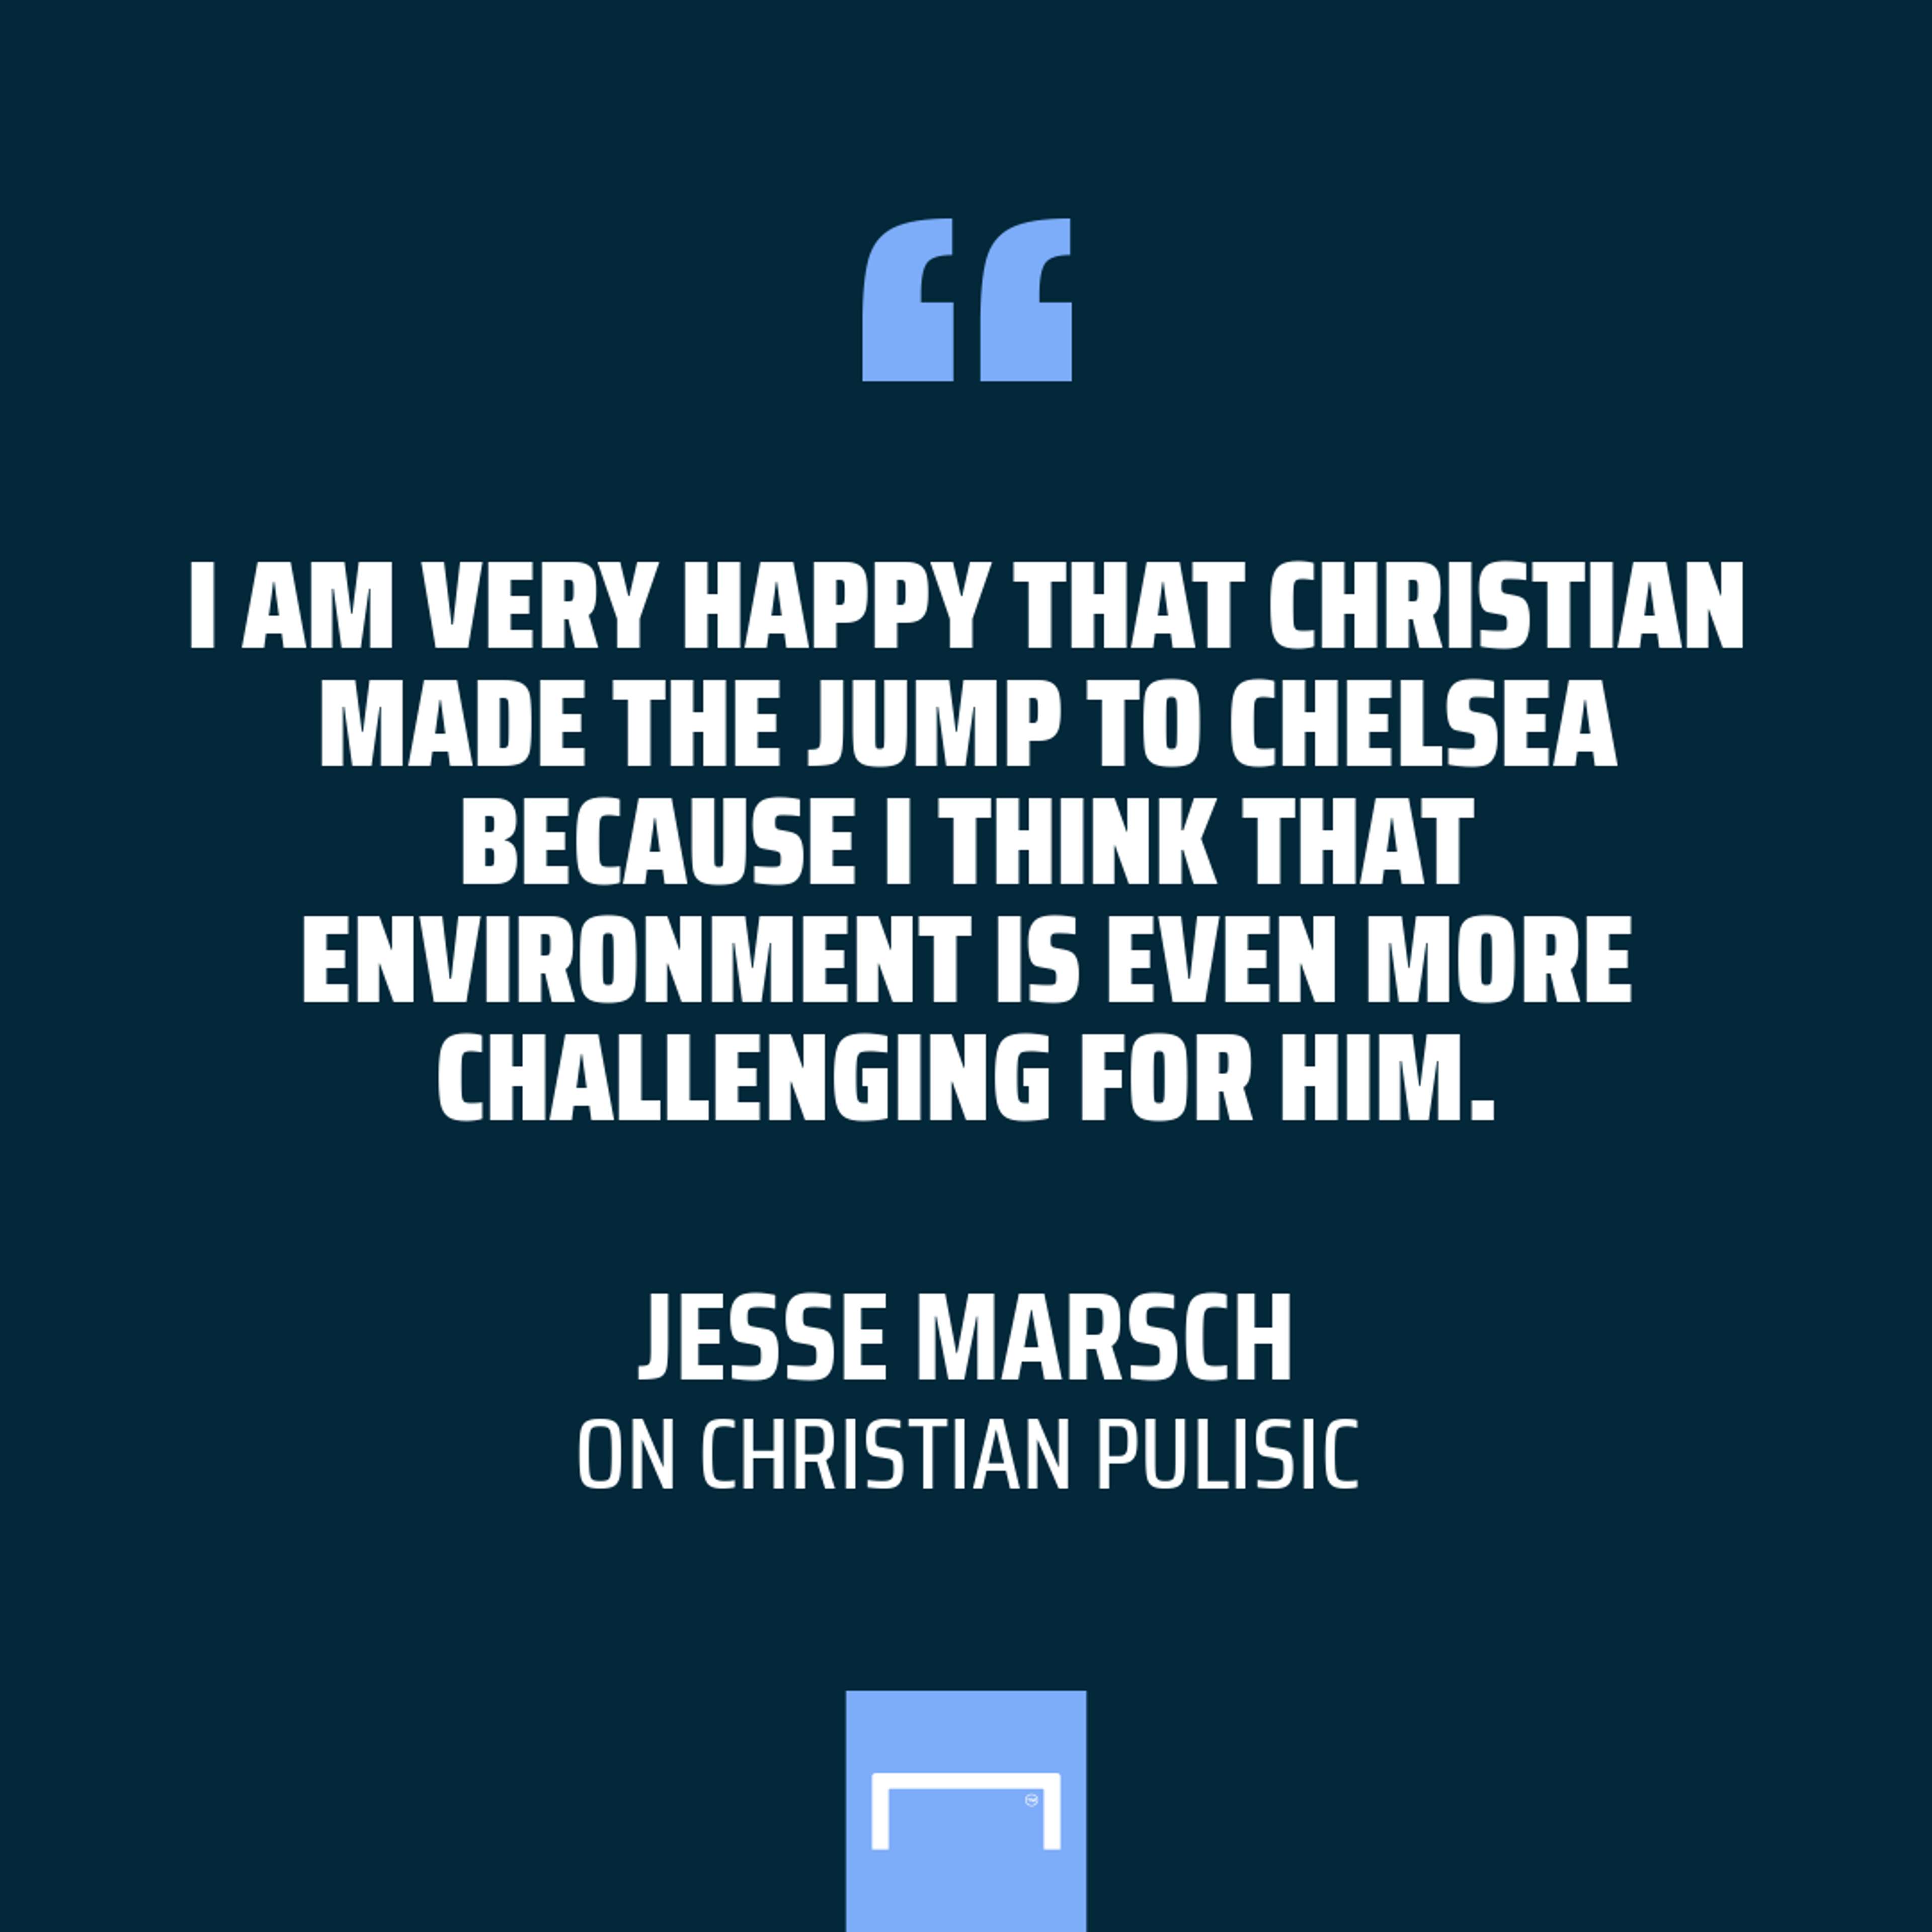 Jesse Marsch quote GFX